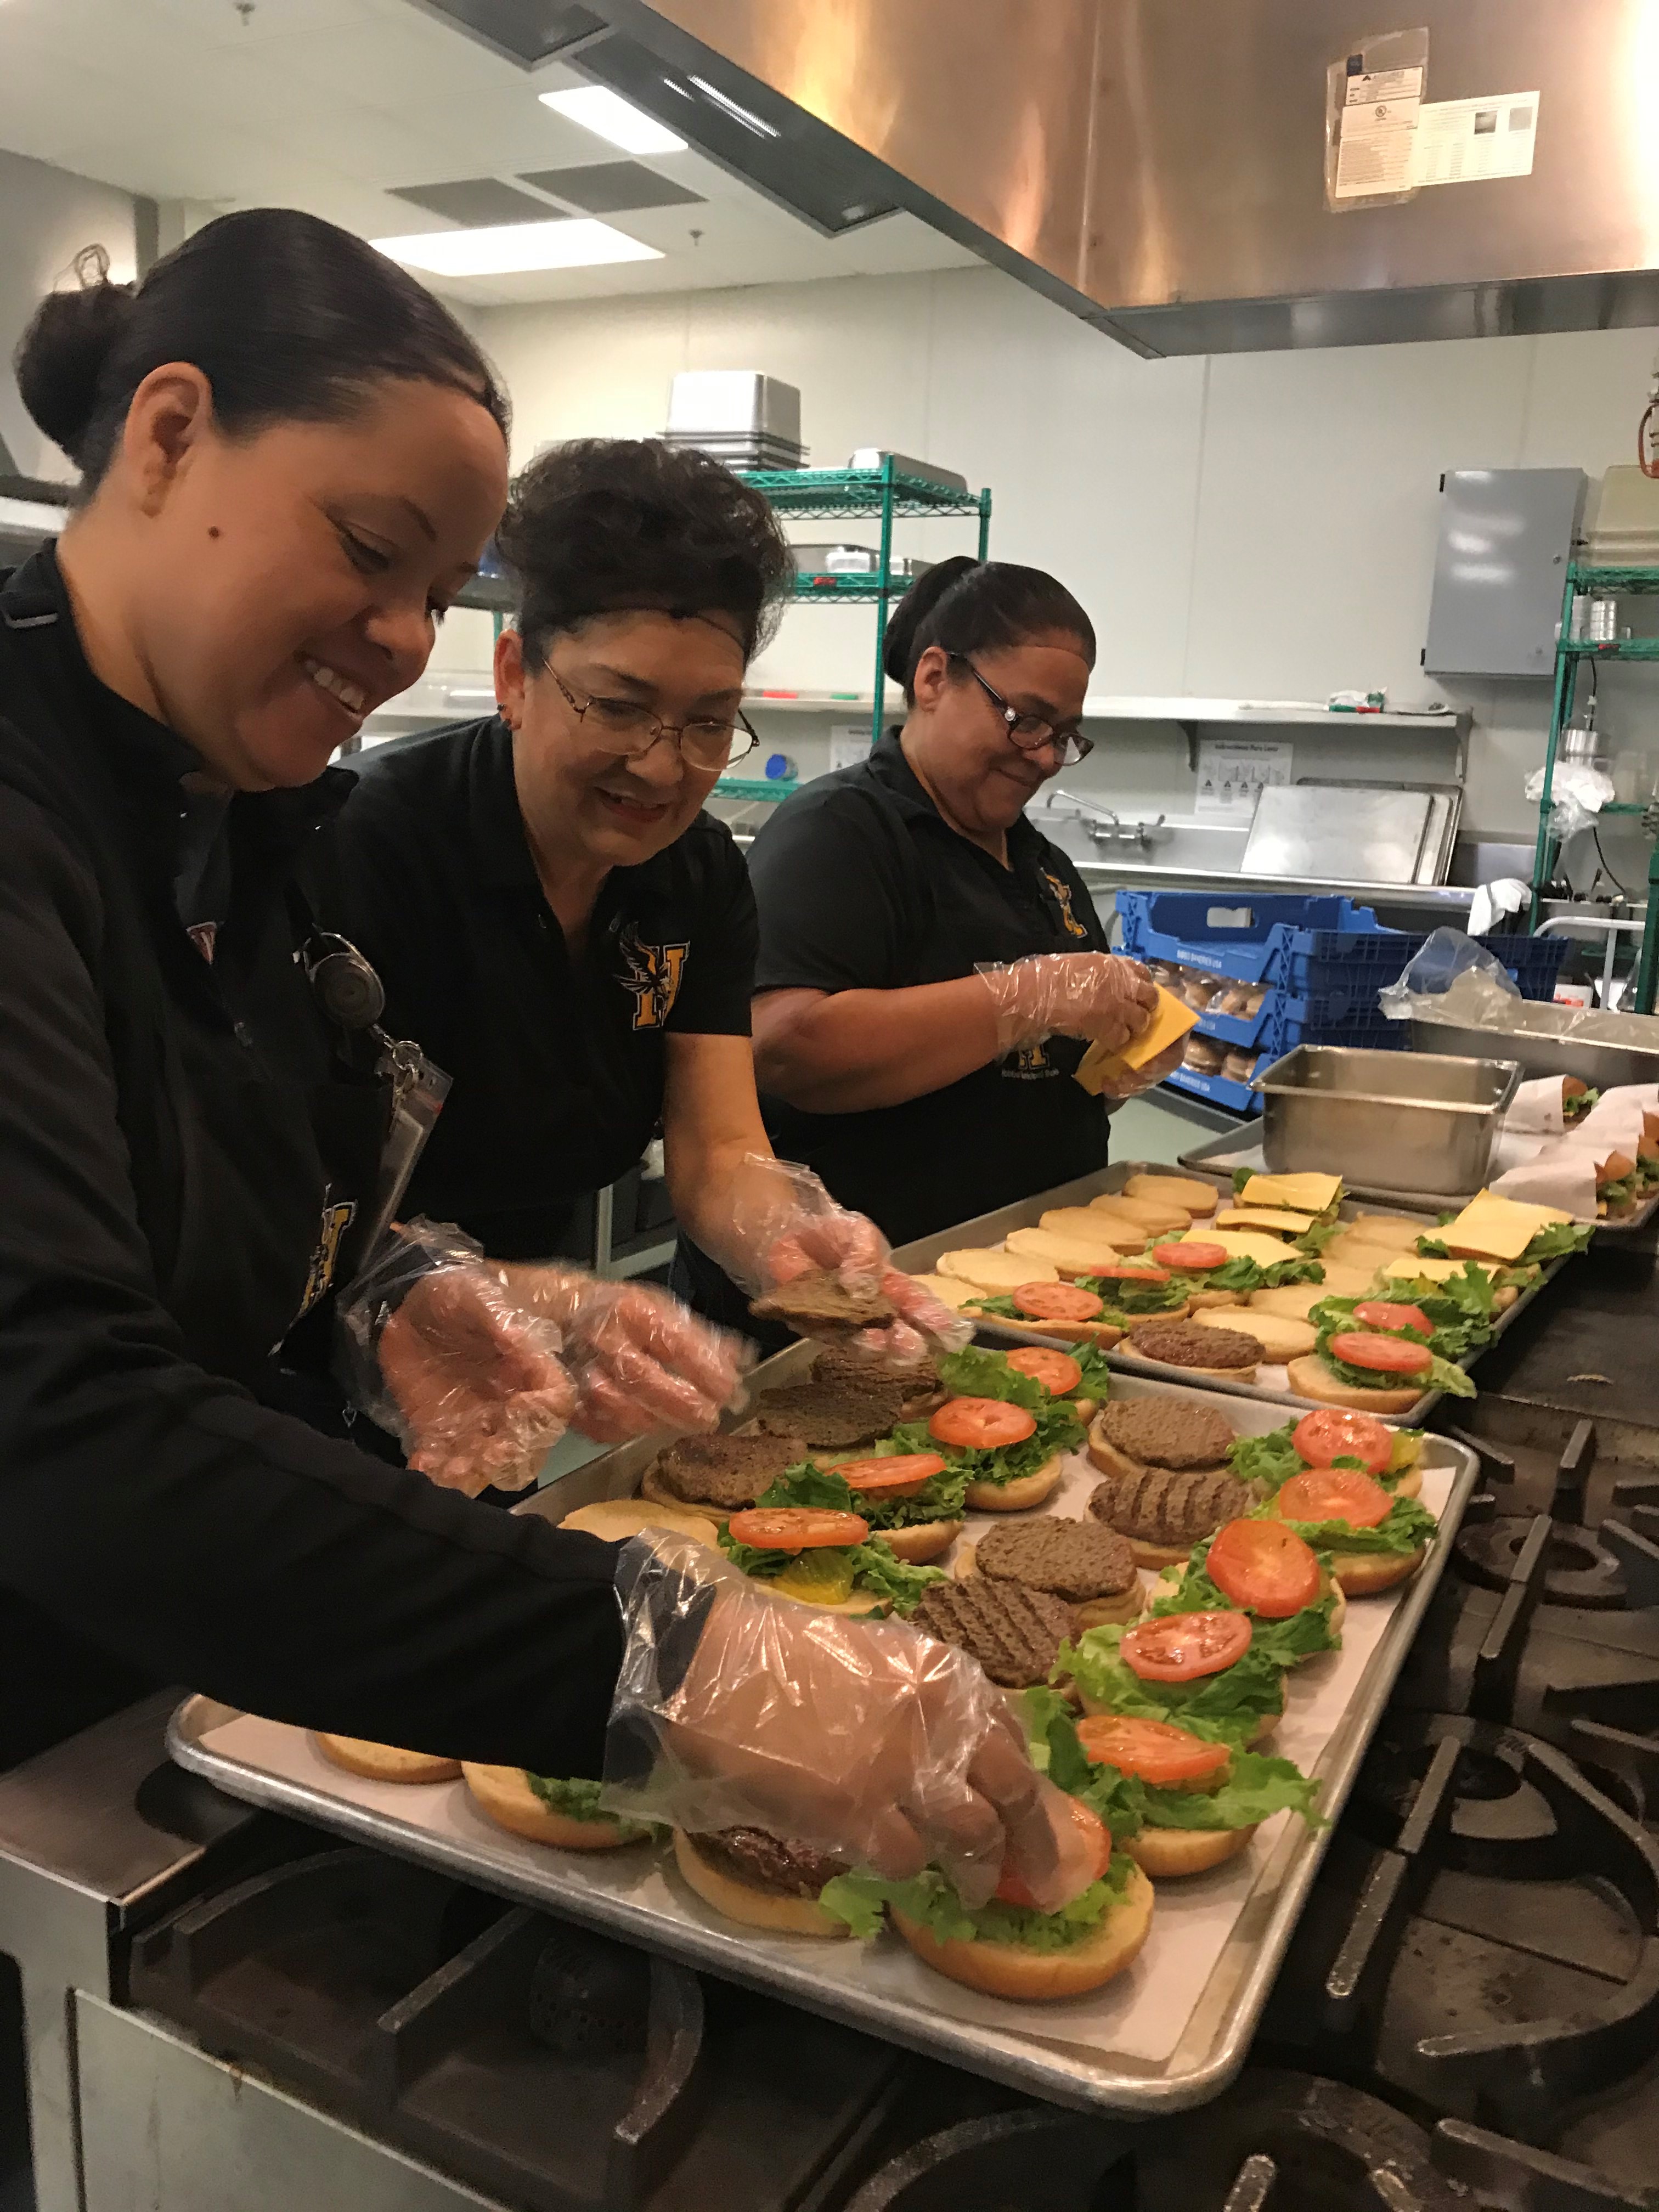 kitchen staff making sandwiches